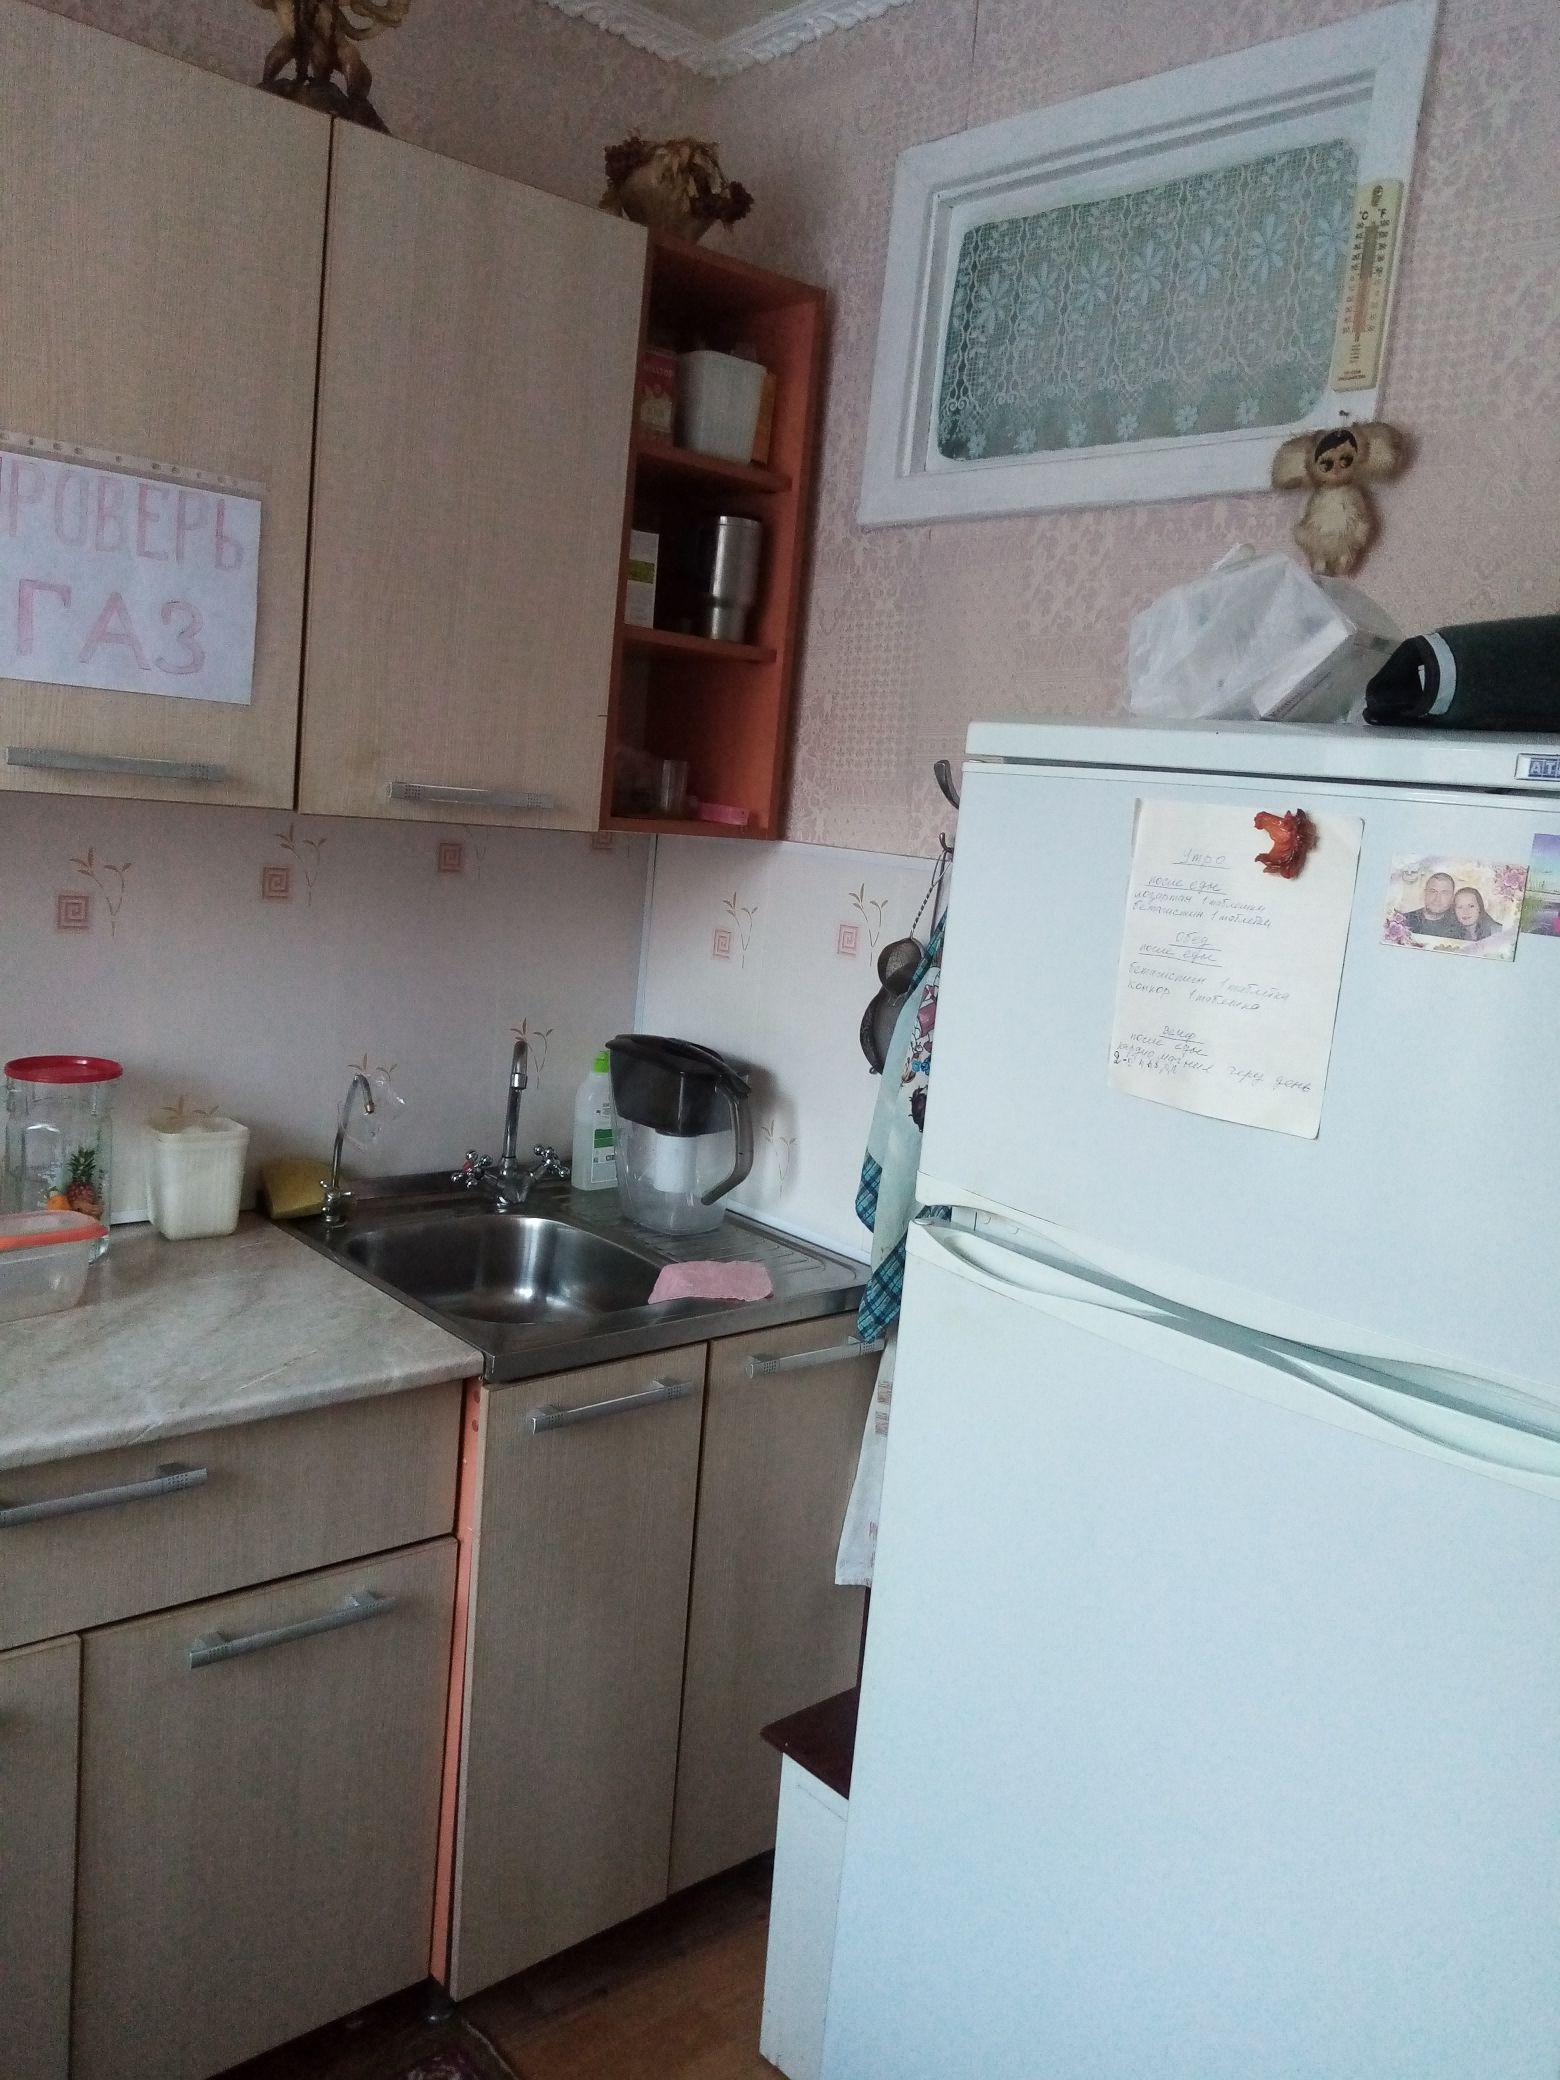 Купить квартиру в Южноуральске Челябинской области 1 комнатную. 1 комнатная квартира южноуральск